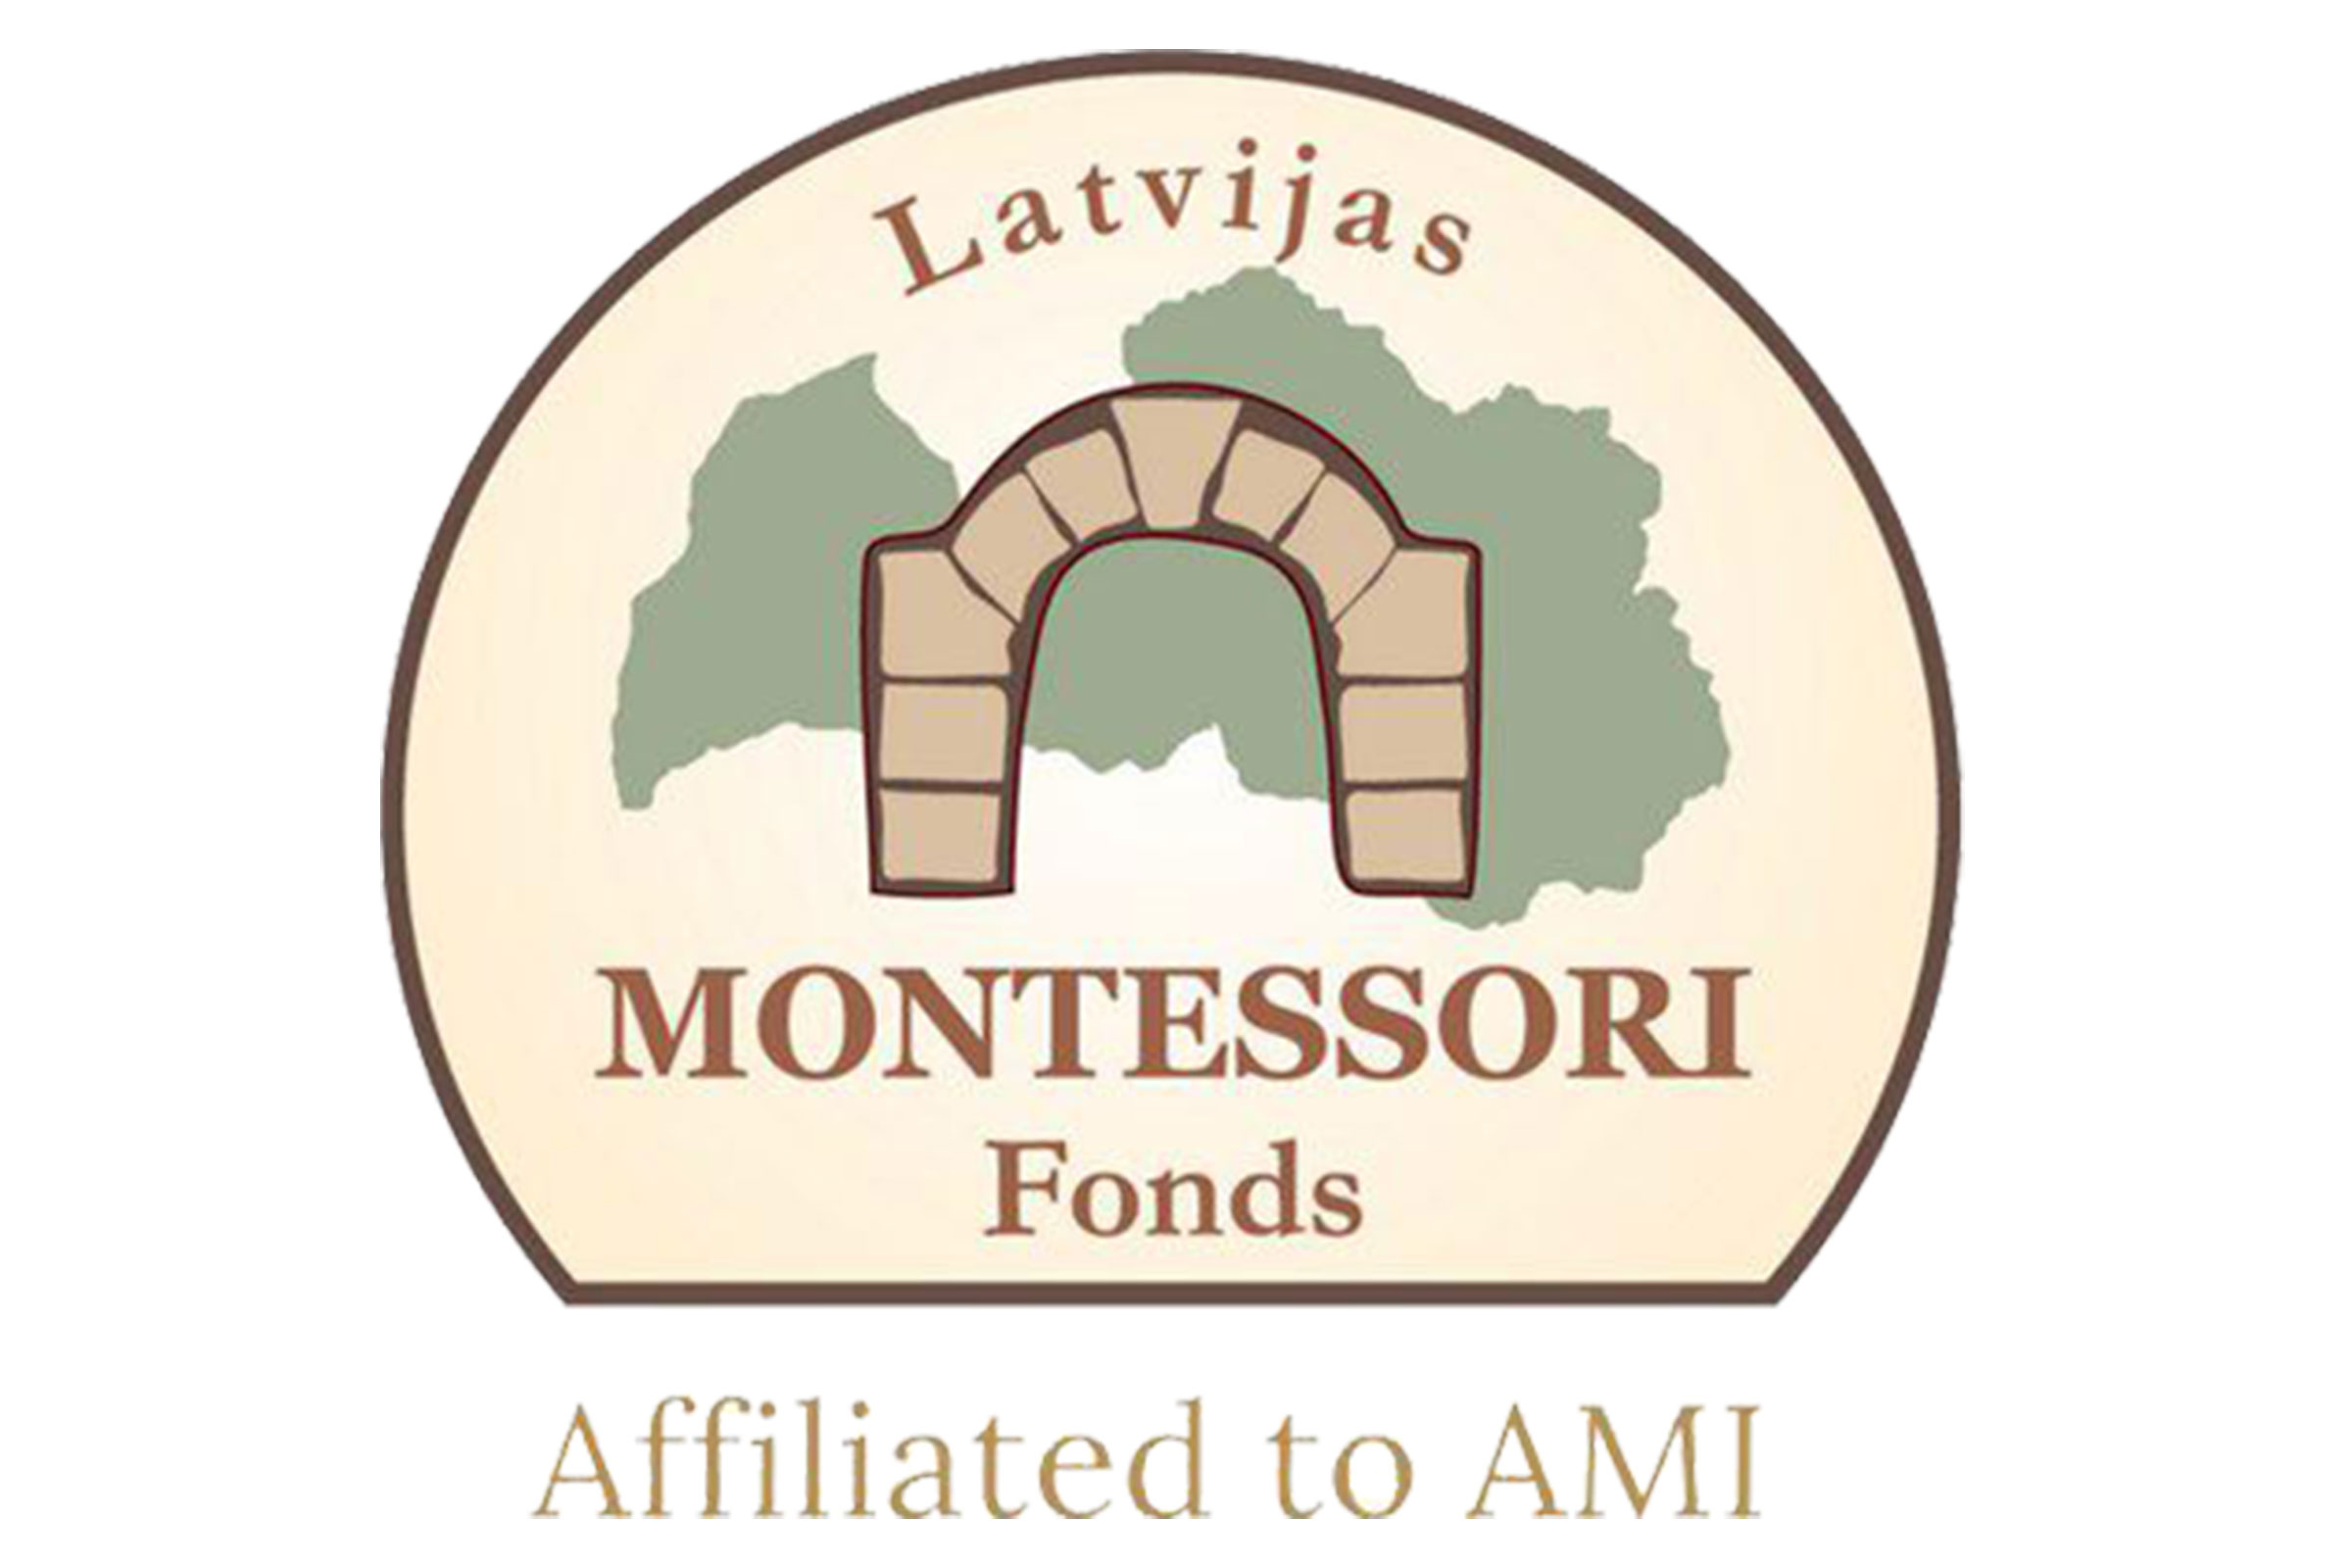 Latvijas Montessori Fonds logo